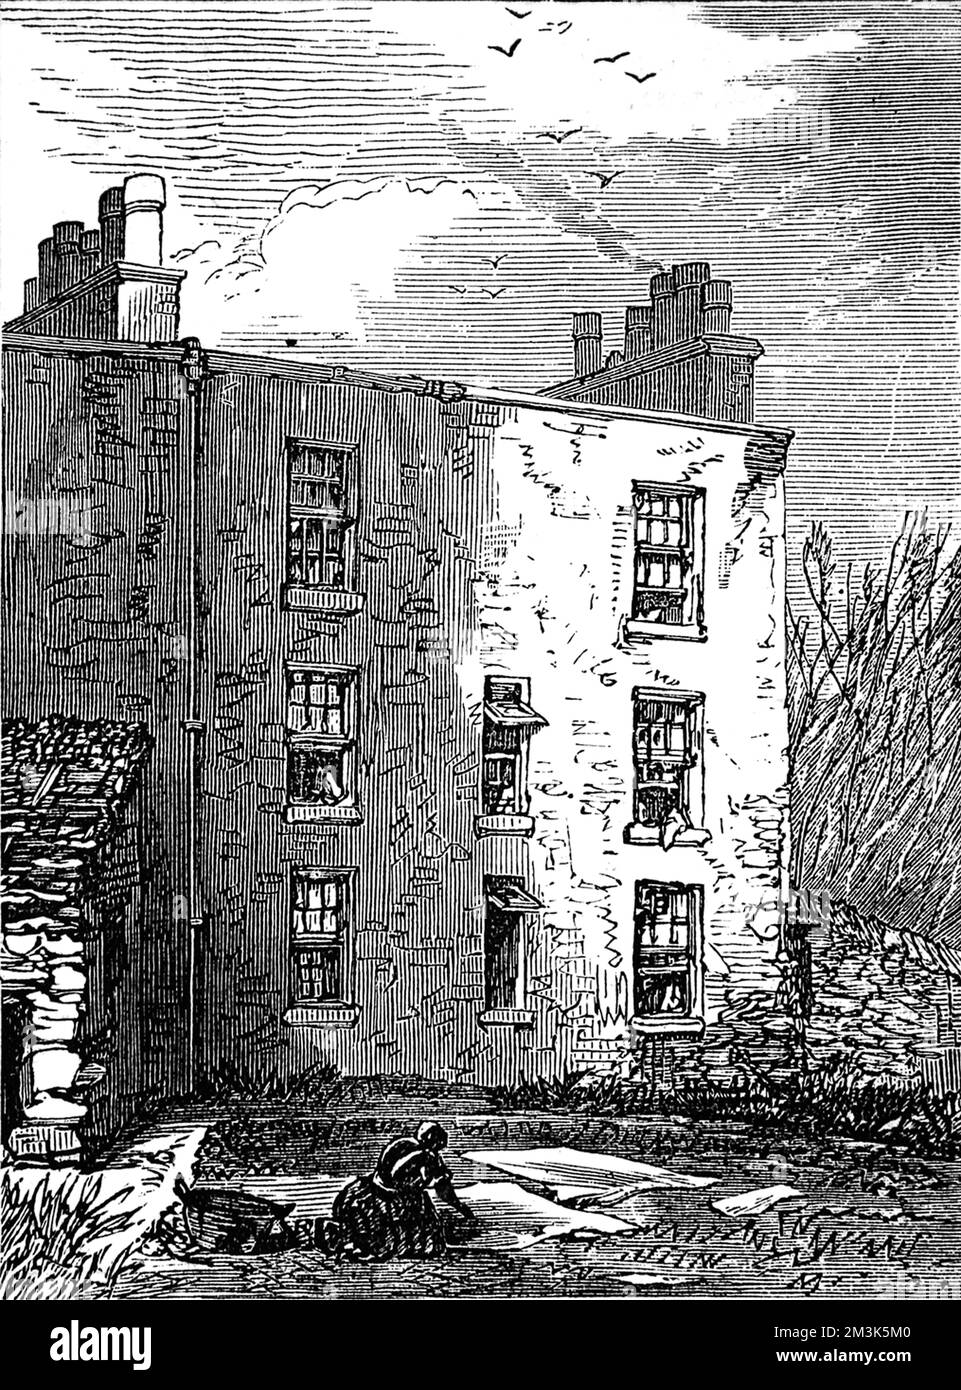 Das Haus, in dem Livingstone, Forscher, geboren wurde. David Livingstone wurde am 19. März 1813 in Blantyre, 13 Meilen südlich von Glasgow, geboren. Er wurde in einem Einzelappartmenthaus in einem Mietshaus namens Shuttle Row geboren, das gebaut wurde, um die Arbeiter in der Baumwollspinnerei am Ufer des Flusses Clyde unterzubringen. 1874 Stockfoto